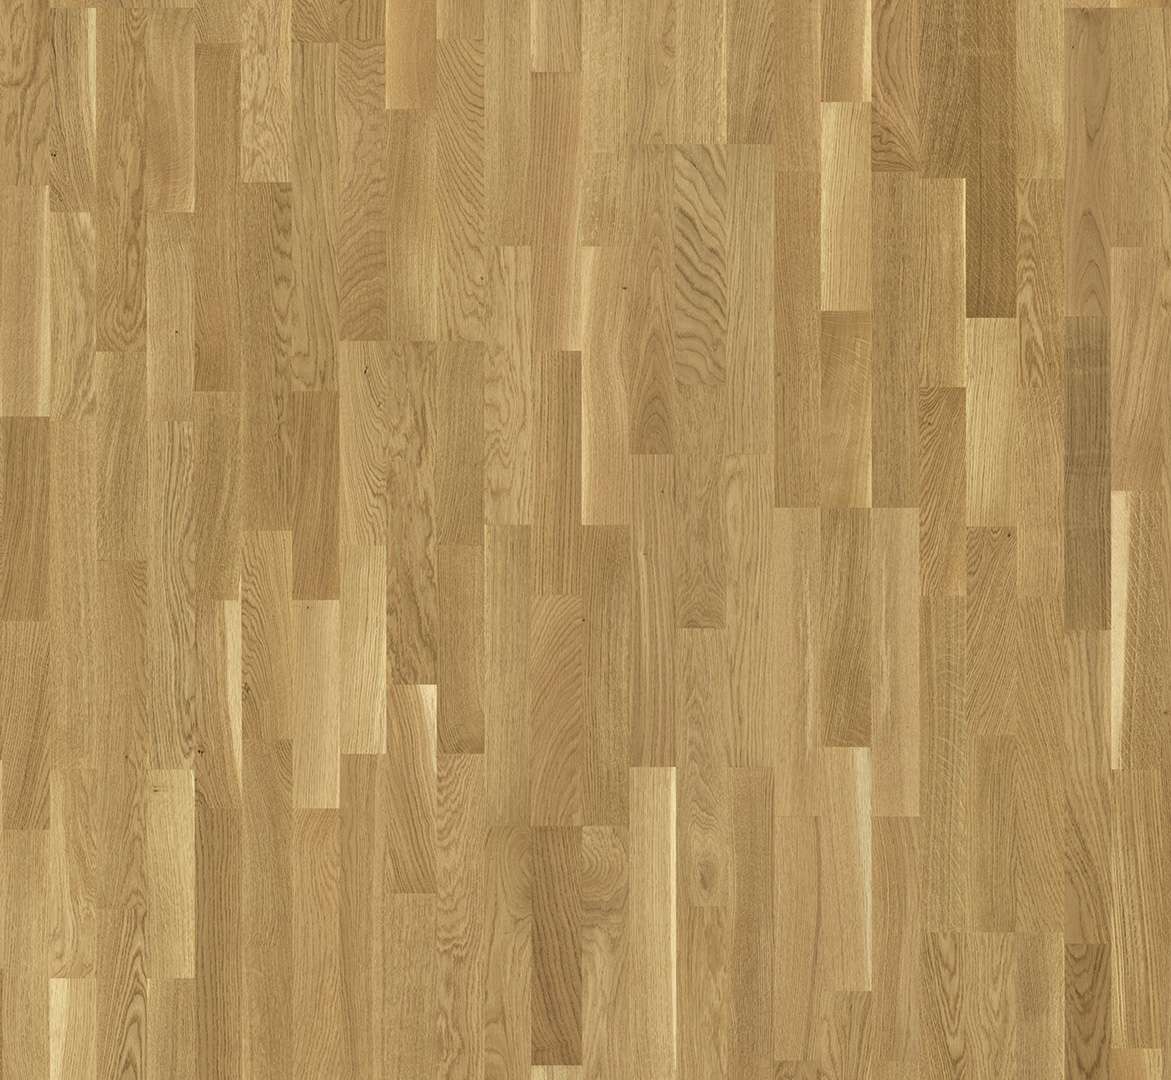 PARADOR Classic 3060 (Dub - Living - olej) 1739905 - dřevěná třívrstvá podlaha